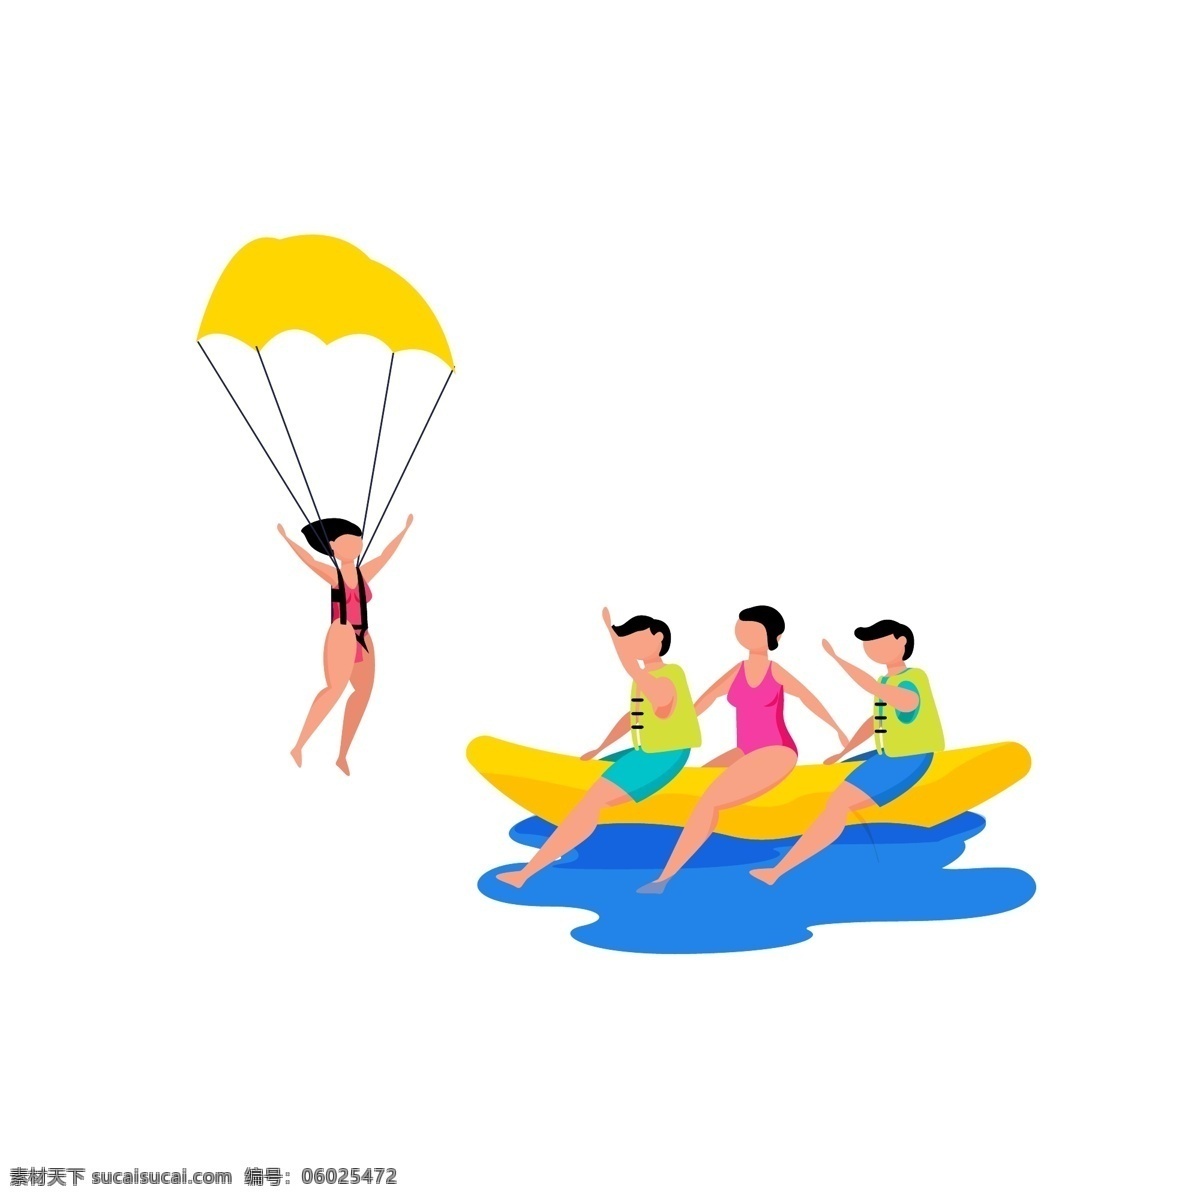 卡通 风格 夏季 海中 游玩 元素 大海 划船 滑翔 泳装